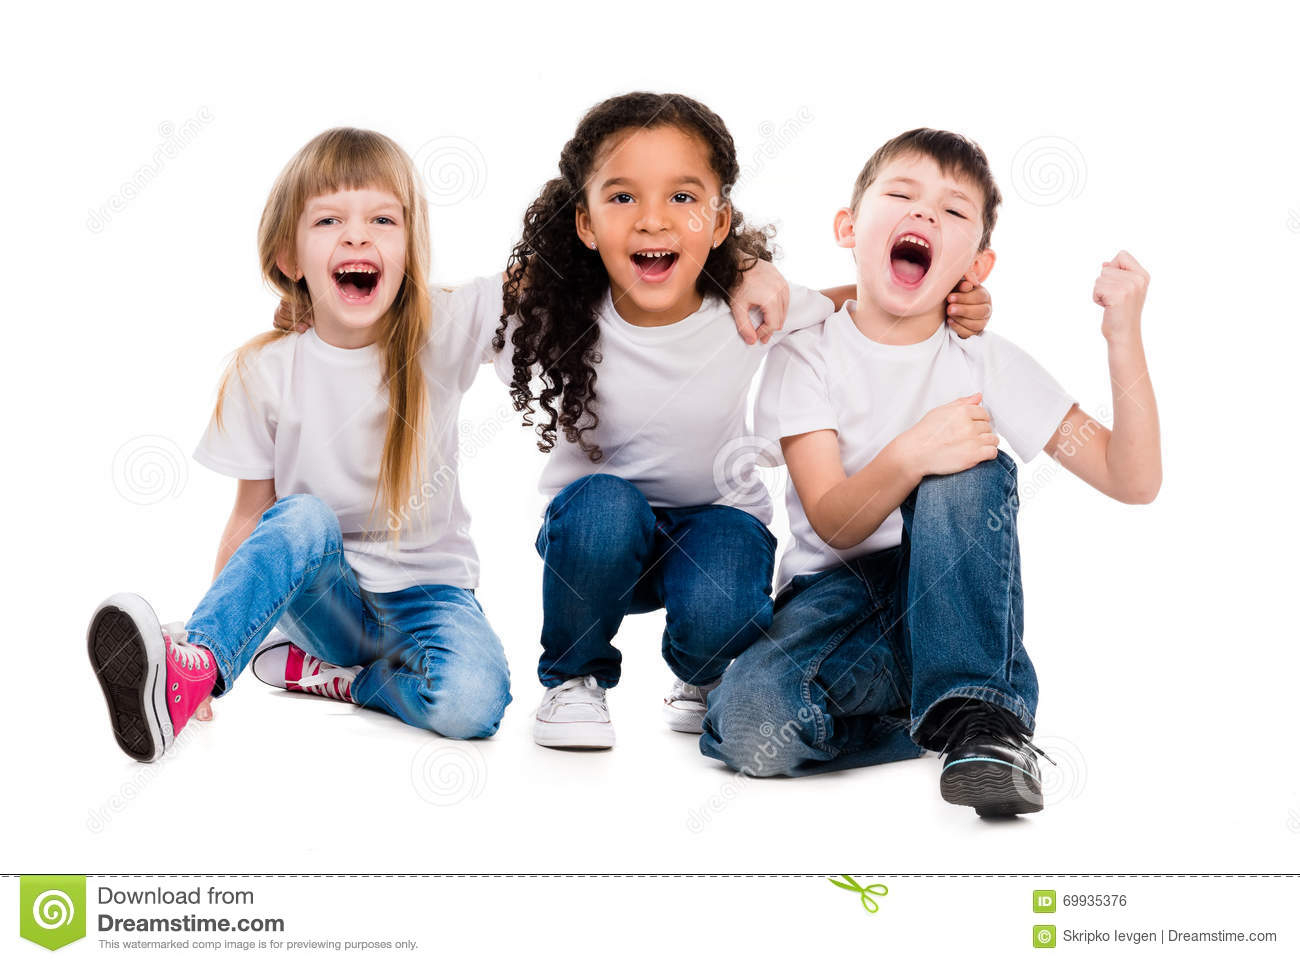 Lustige Bilder Für Kinder Zum Lachen innen Kinder Lachen Bilder